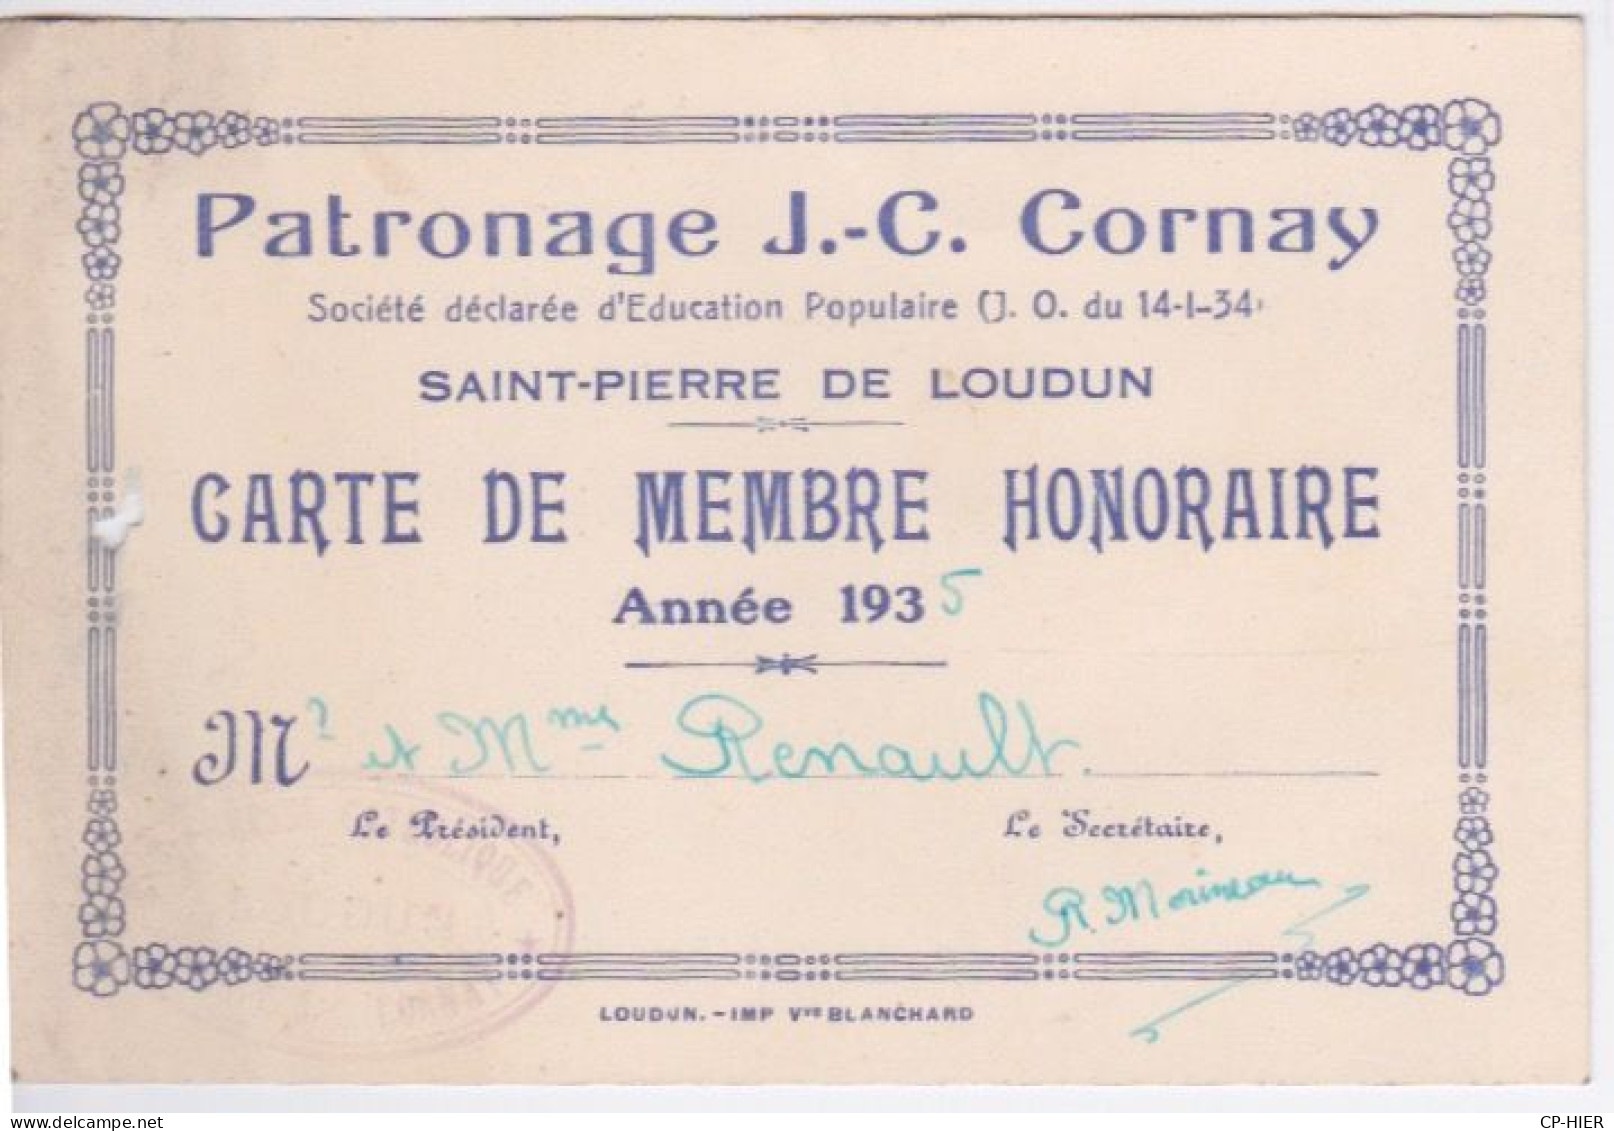 86 - VIENNE - CARTE DE MEMBRE HONORAIRE 1935 - ST PIERRE DE LOUDUN - PATRONAGE J.C. CORNAY - Loudun